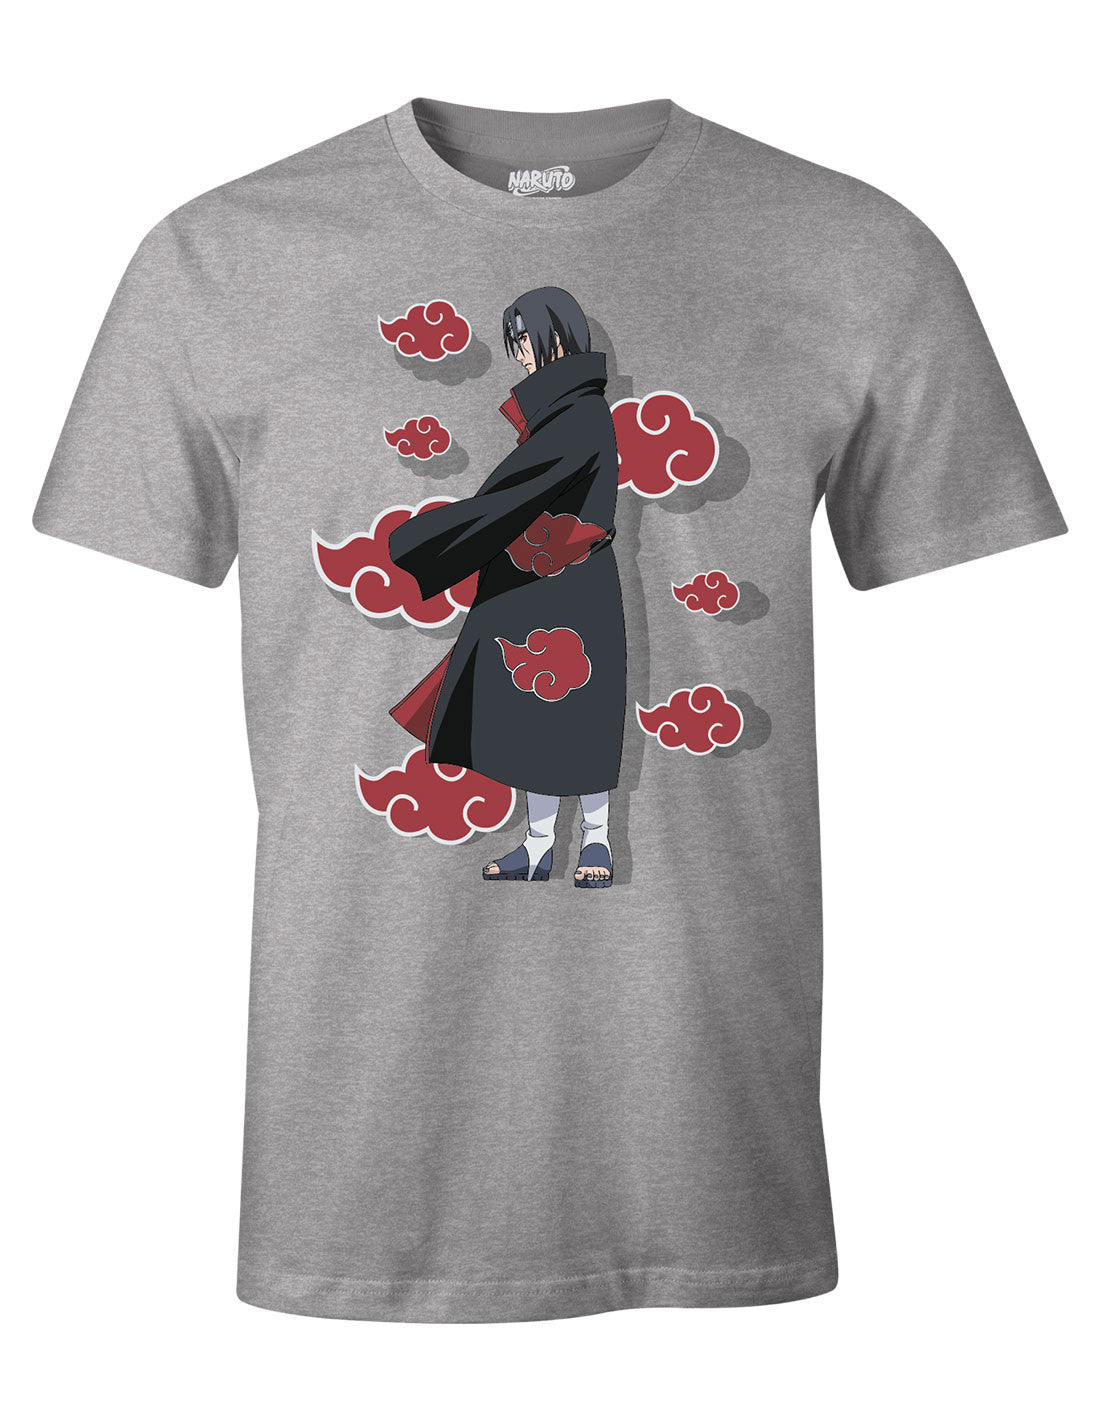 Naruto t-shirt - Itachi